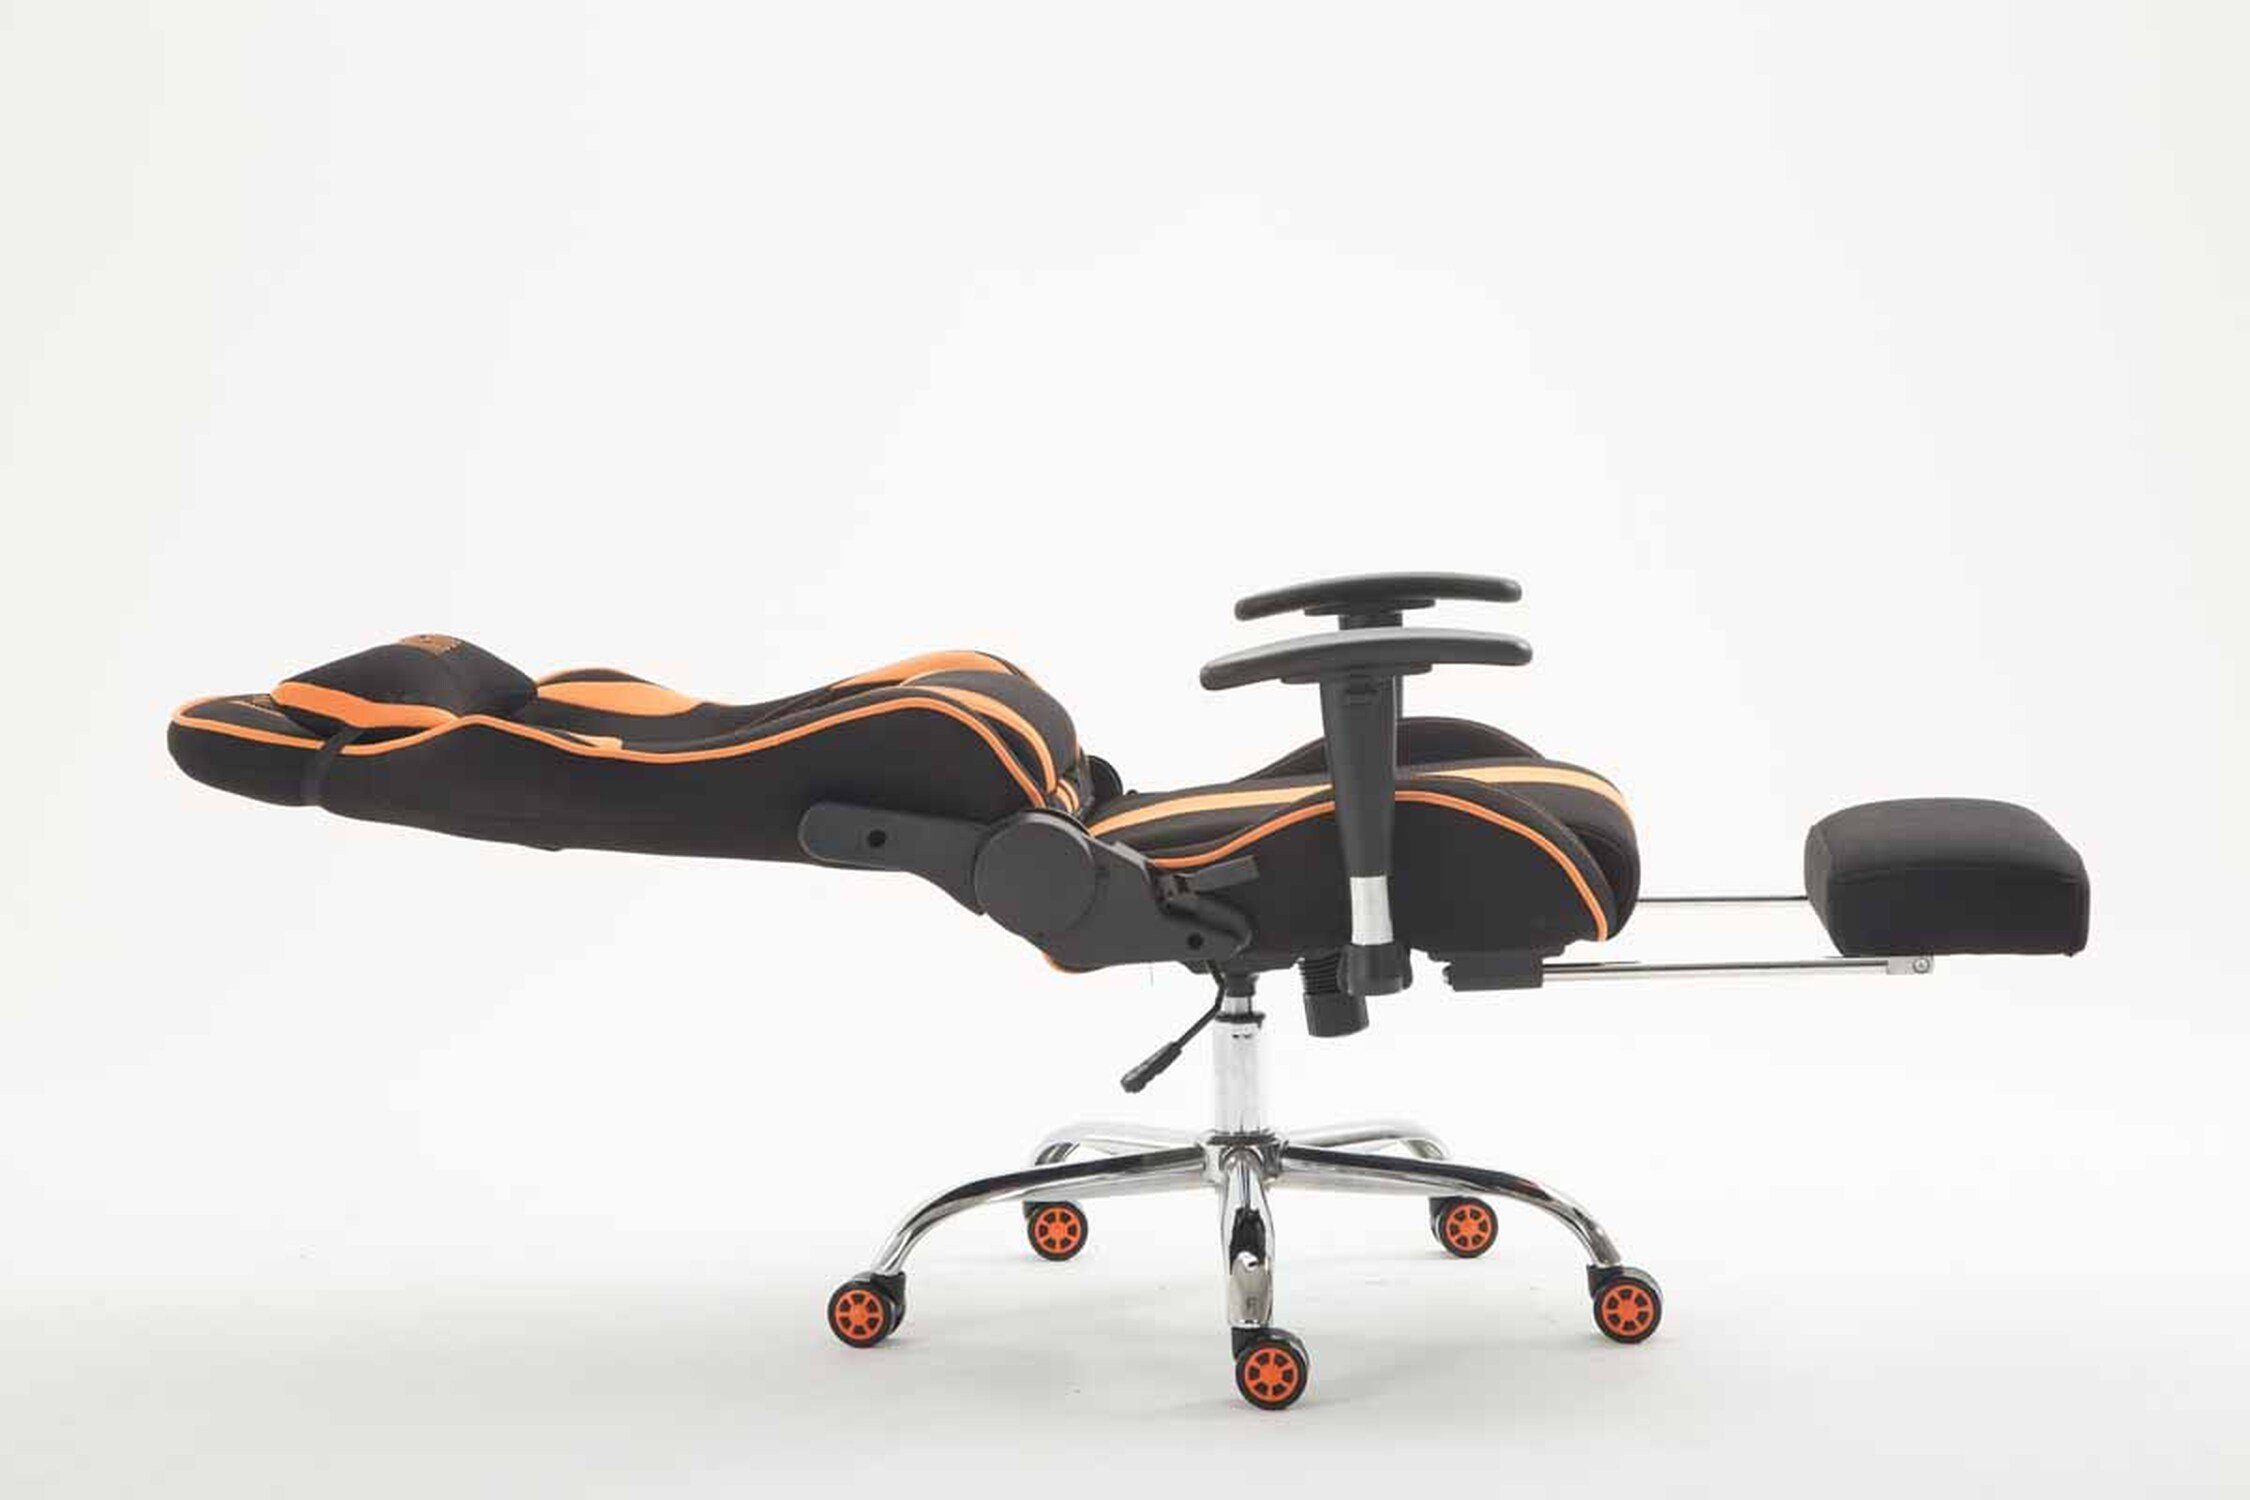 höhenverstellbar chrom Metall schwarz/orange Limitless Gestell: Sitzfläche: Racingstuhl, und Gaming-Stuhl (Schreibtischstuhl, TPFLiving - Stoff - 360° bequemer mit Rückenlehne drehbar Drehstuhl, Chefsessel), Gamingstuhl,